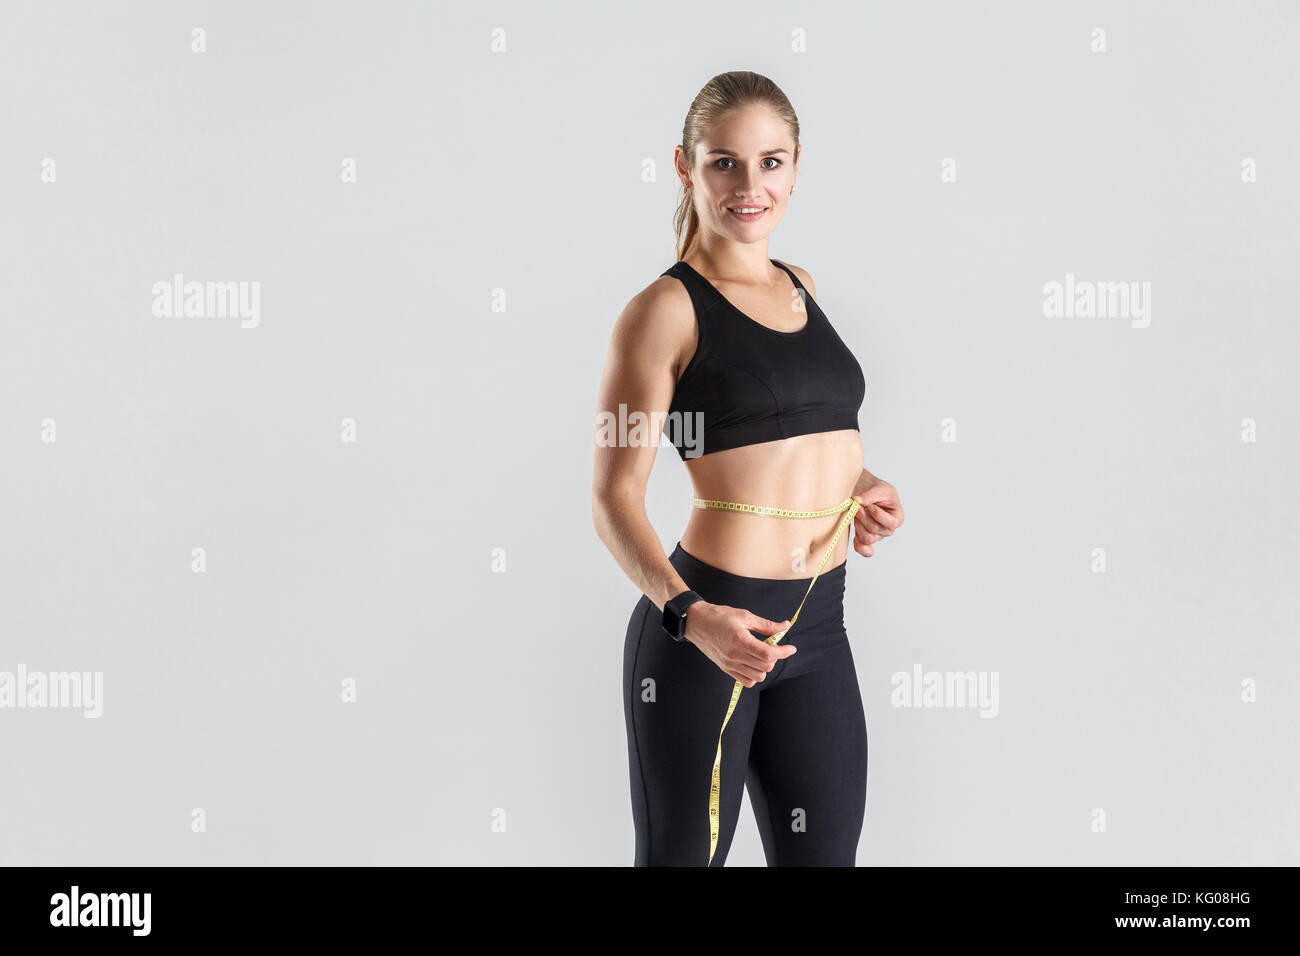 Gewicht Verlust Konzept. ideale Abbildung und Magen. Frau mit Zentimeter- und lächelnd. studio Shot, grauer Hintergrund Stockfoto